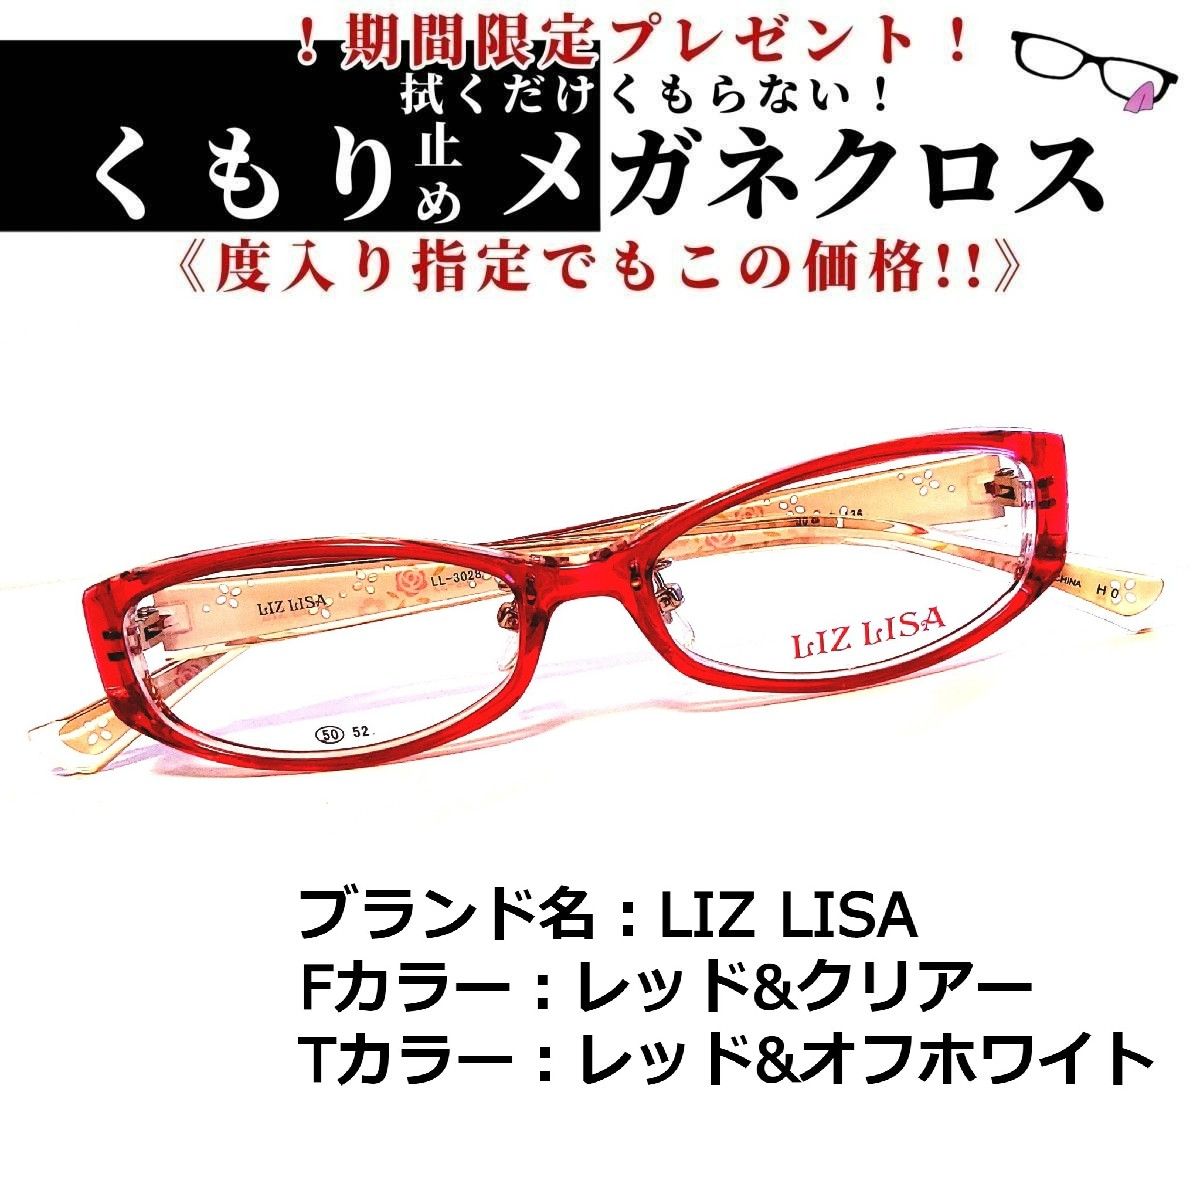 No.1373メガネ LIZ LISA レッド・クリアー【度数入り込み価格】 | www